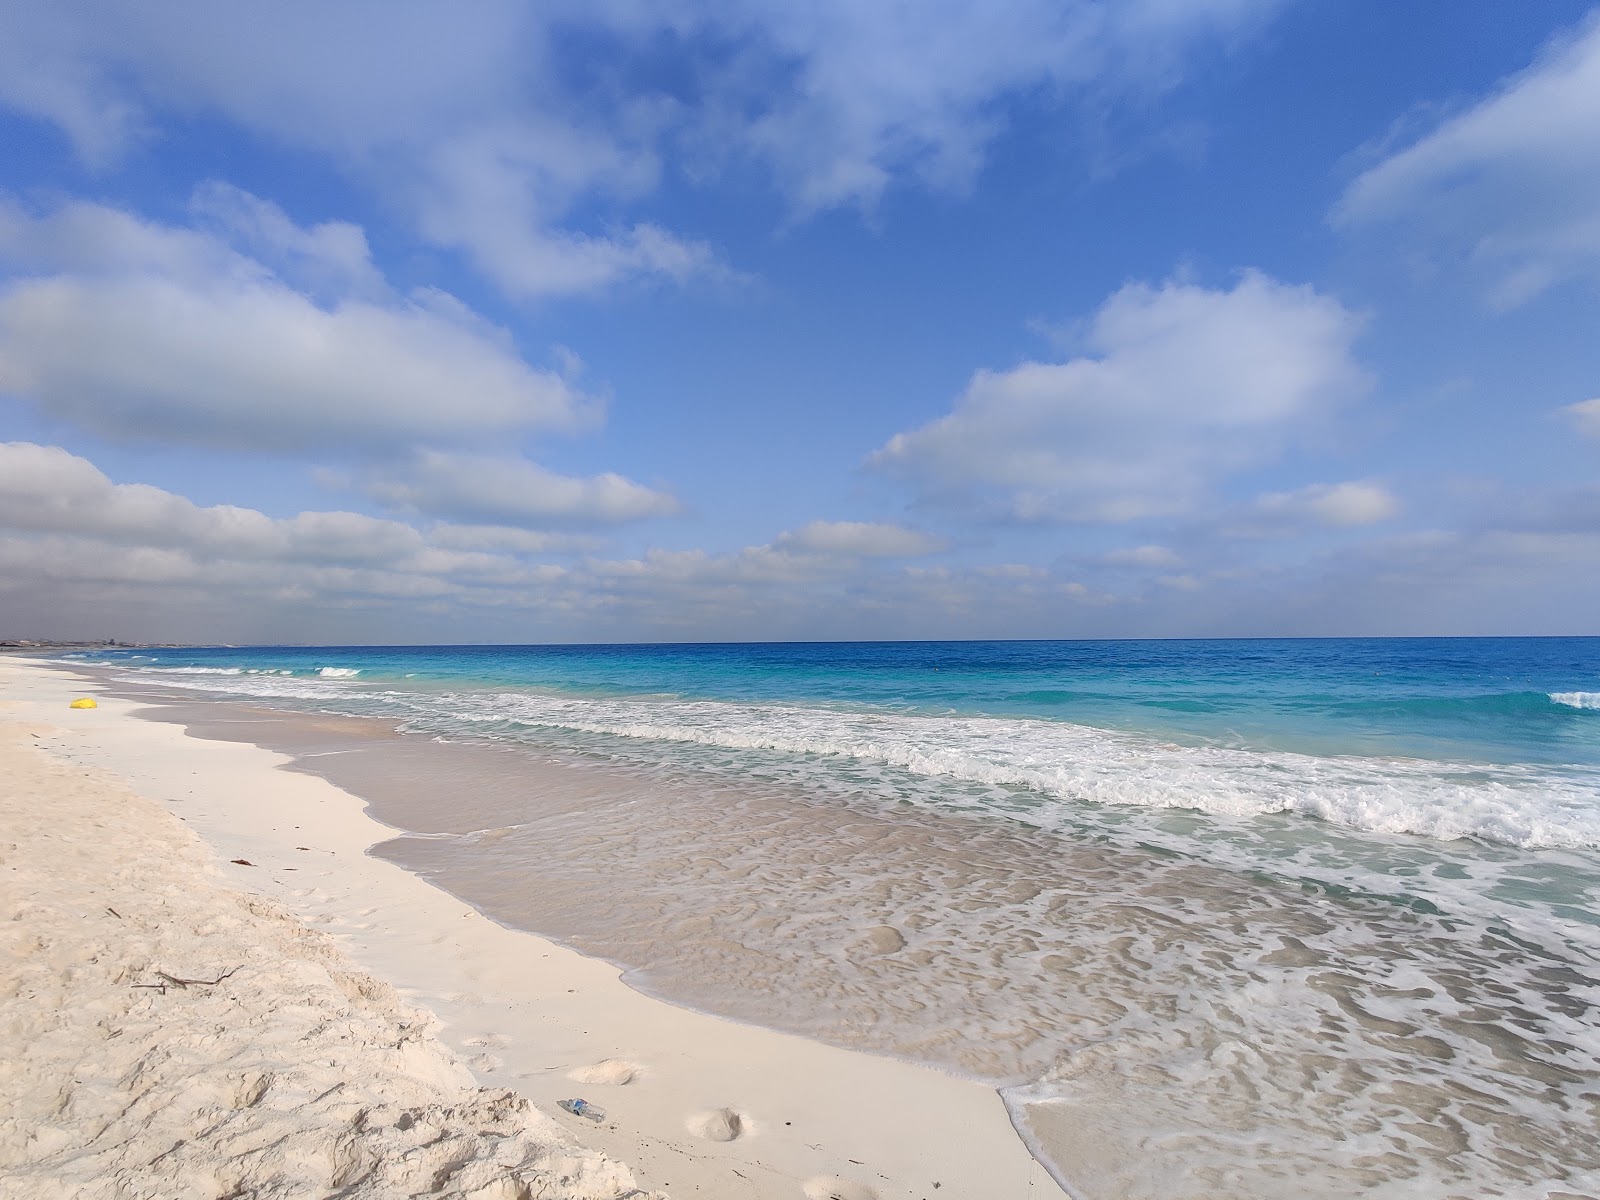 Zdjęcie Marina Sunshine z powierzchnią biały drobny piasek